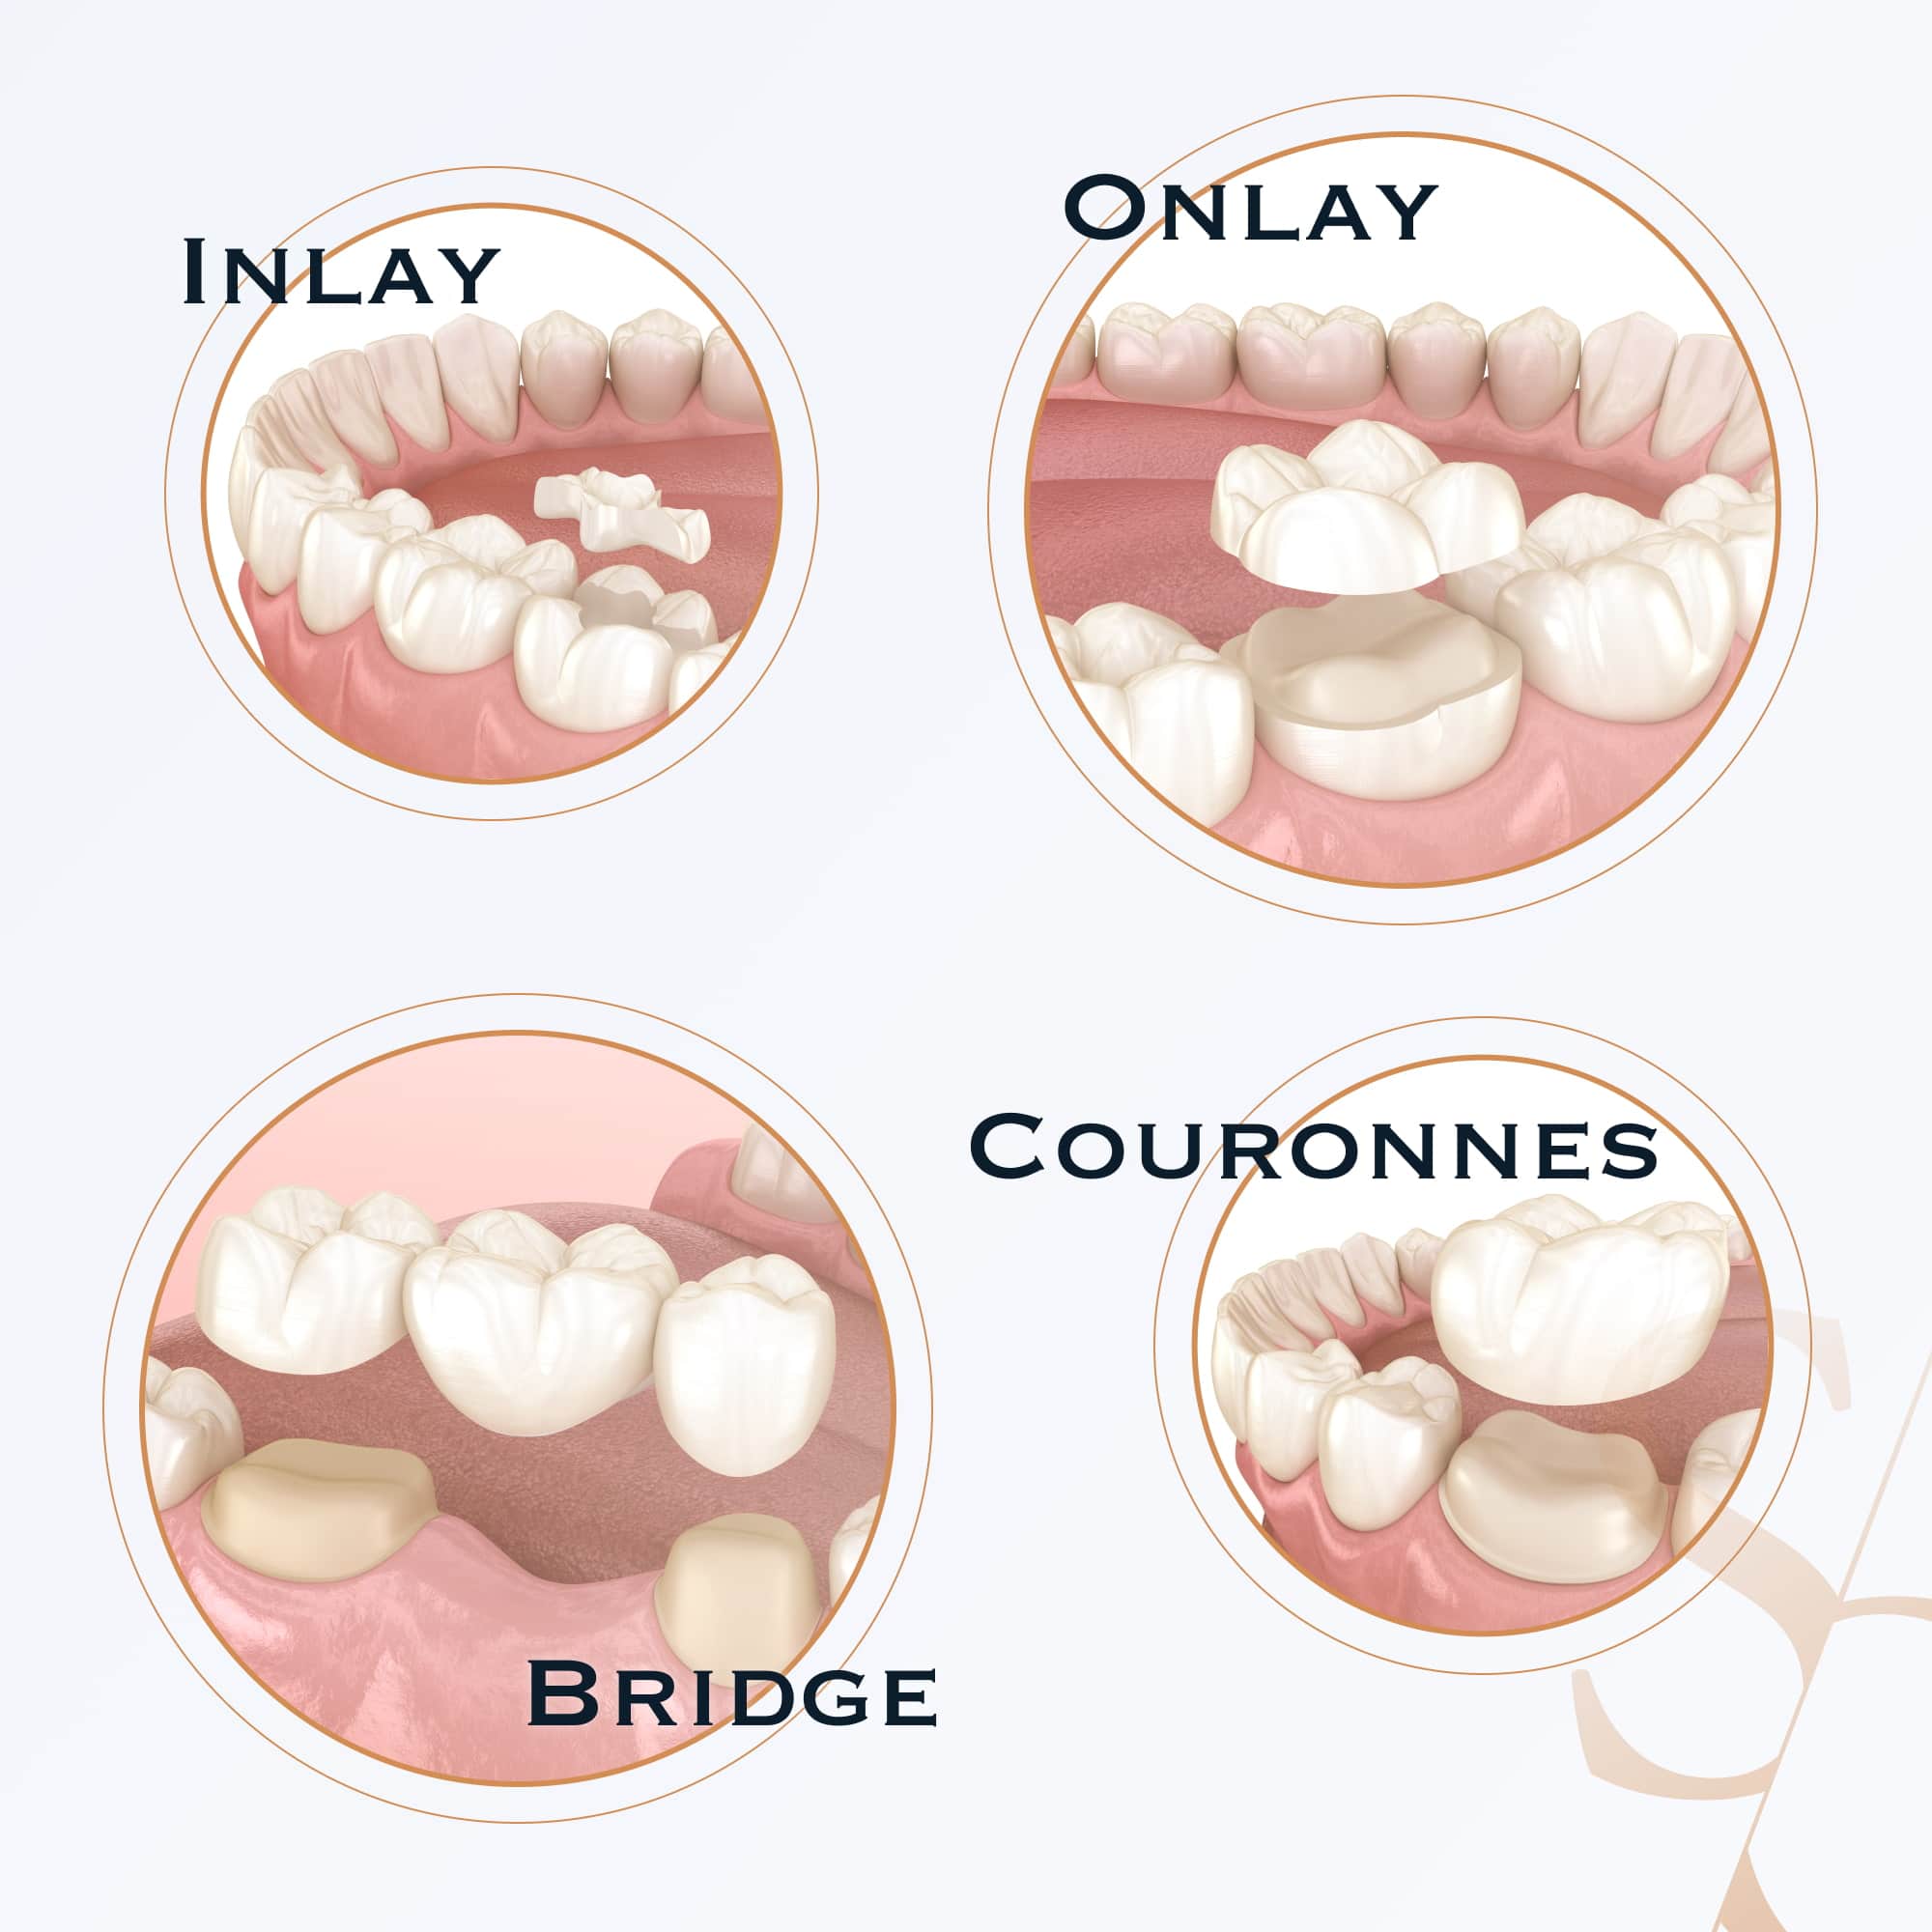 Prothèses dentaires: fixes/amovibles, partielles/complètes, sur implants